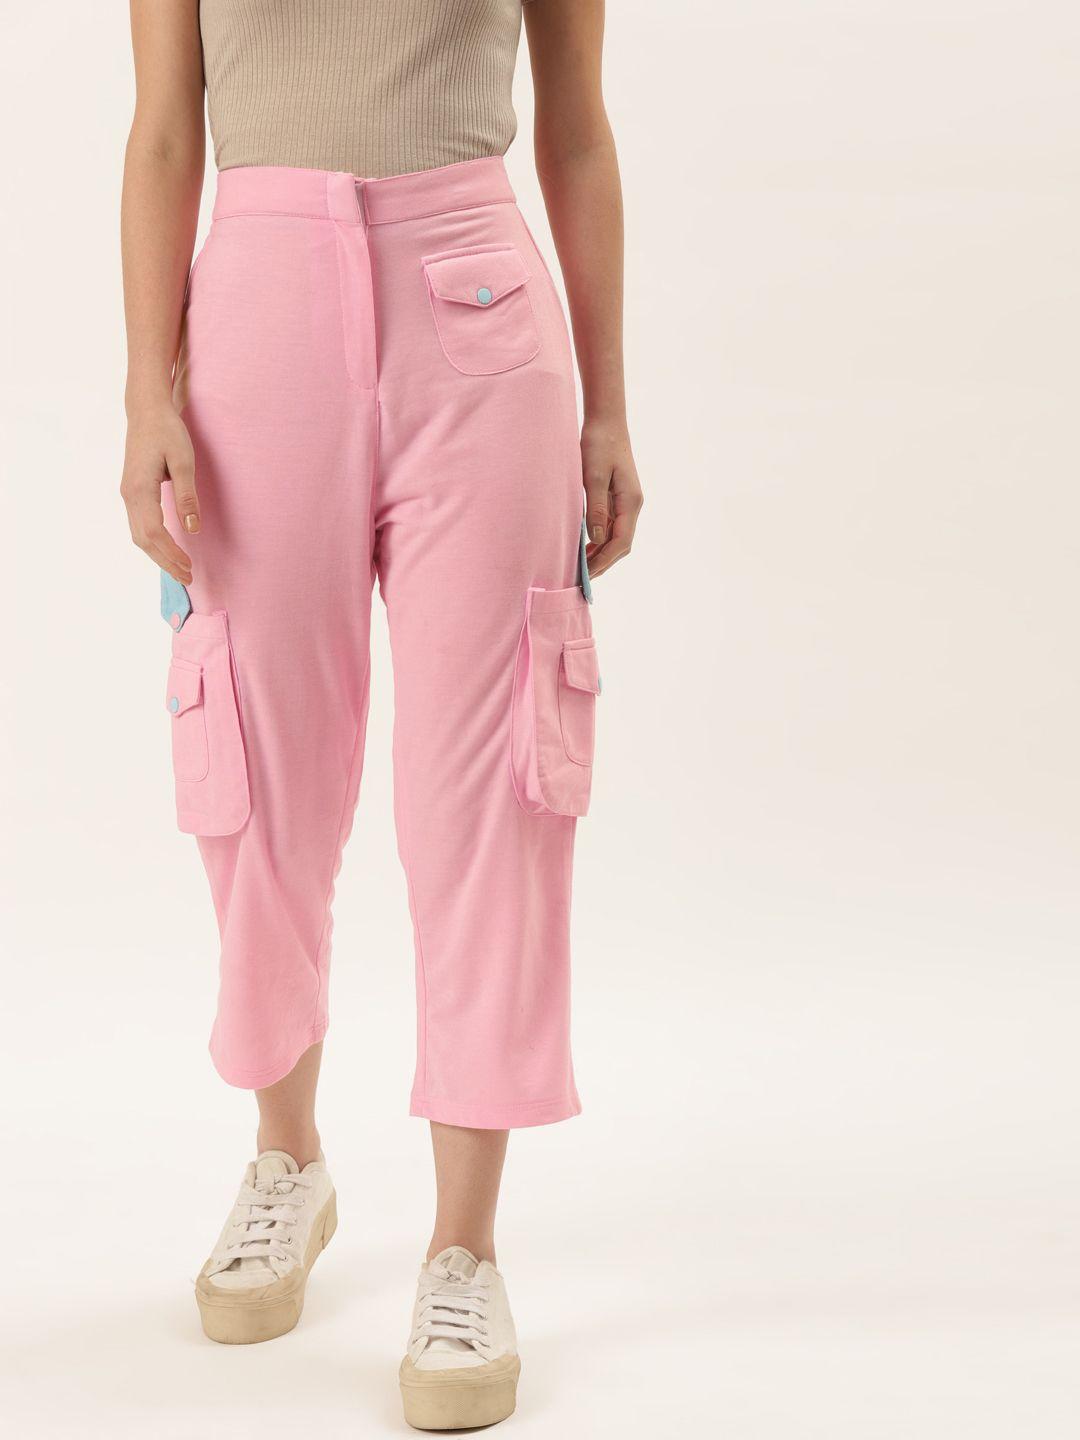 alsace lorraine paris women pink solid cotton cargo track pant